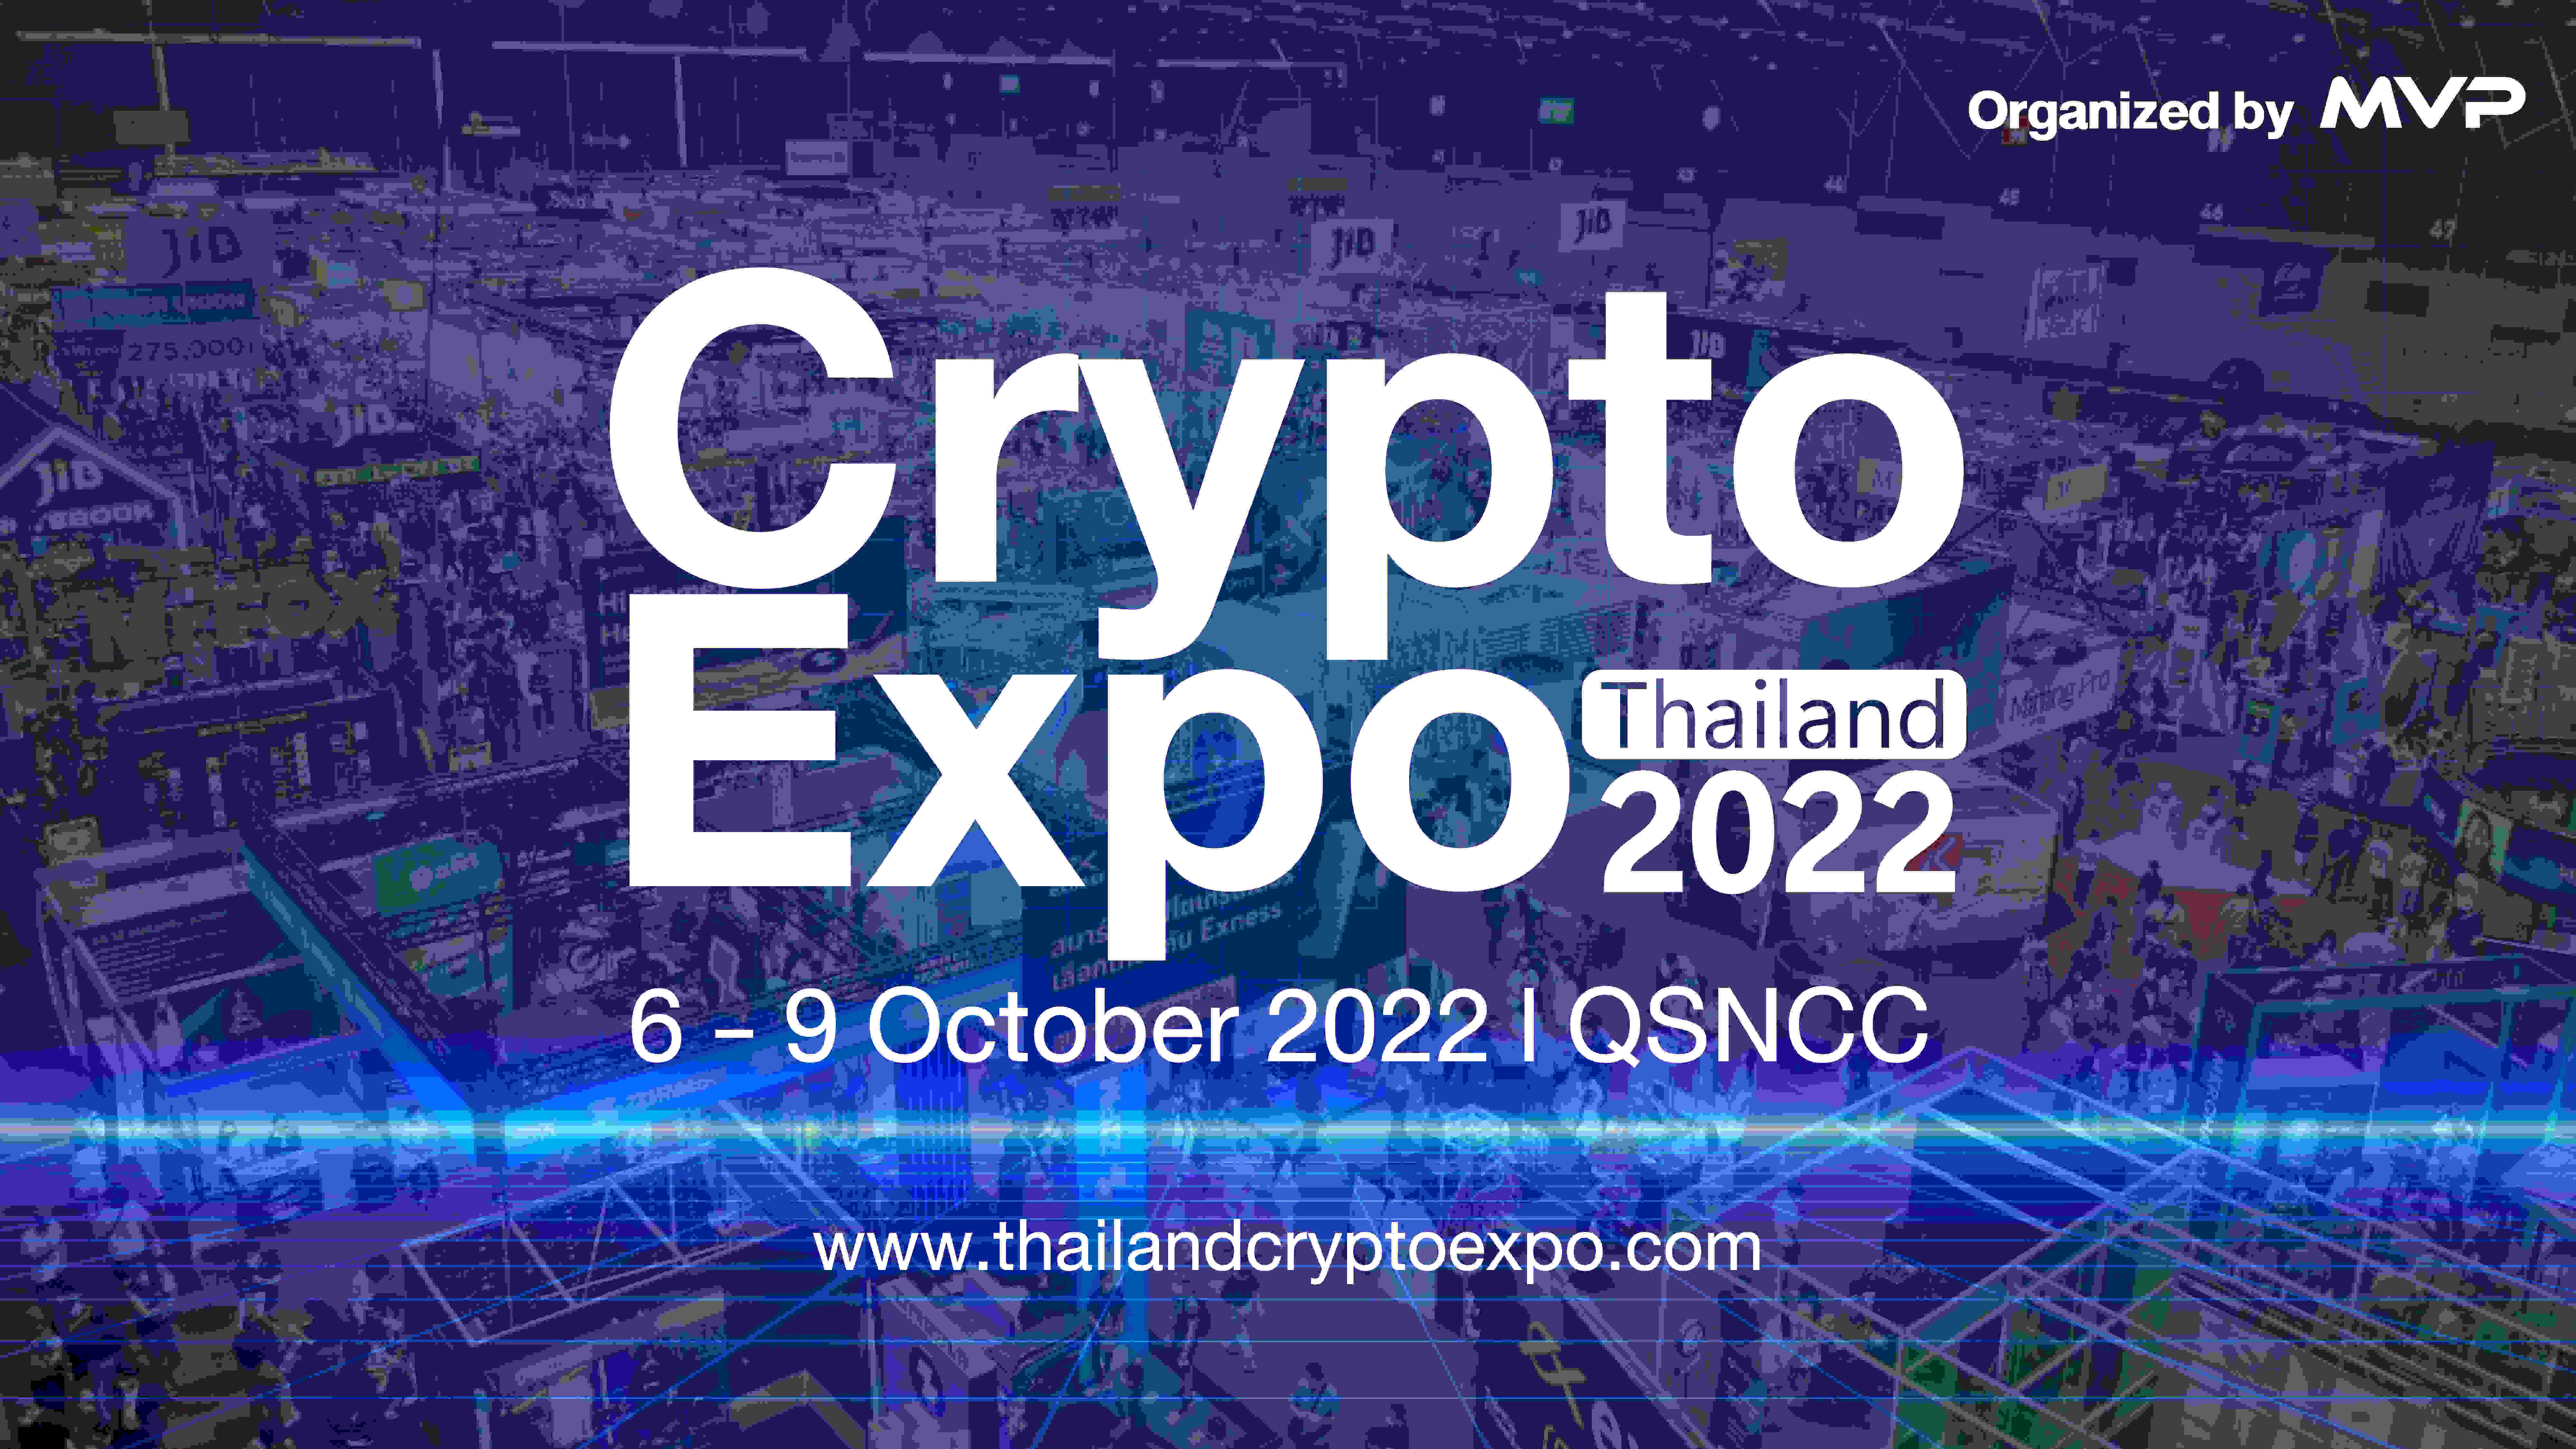 Crypto Expo Thailand 2022